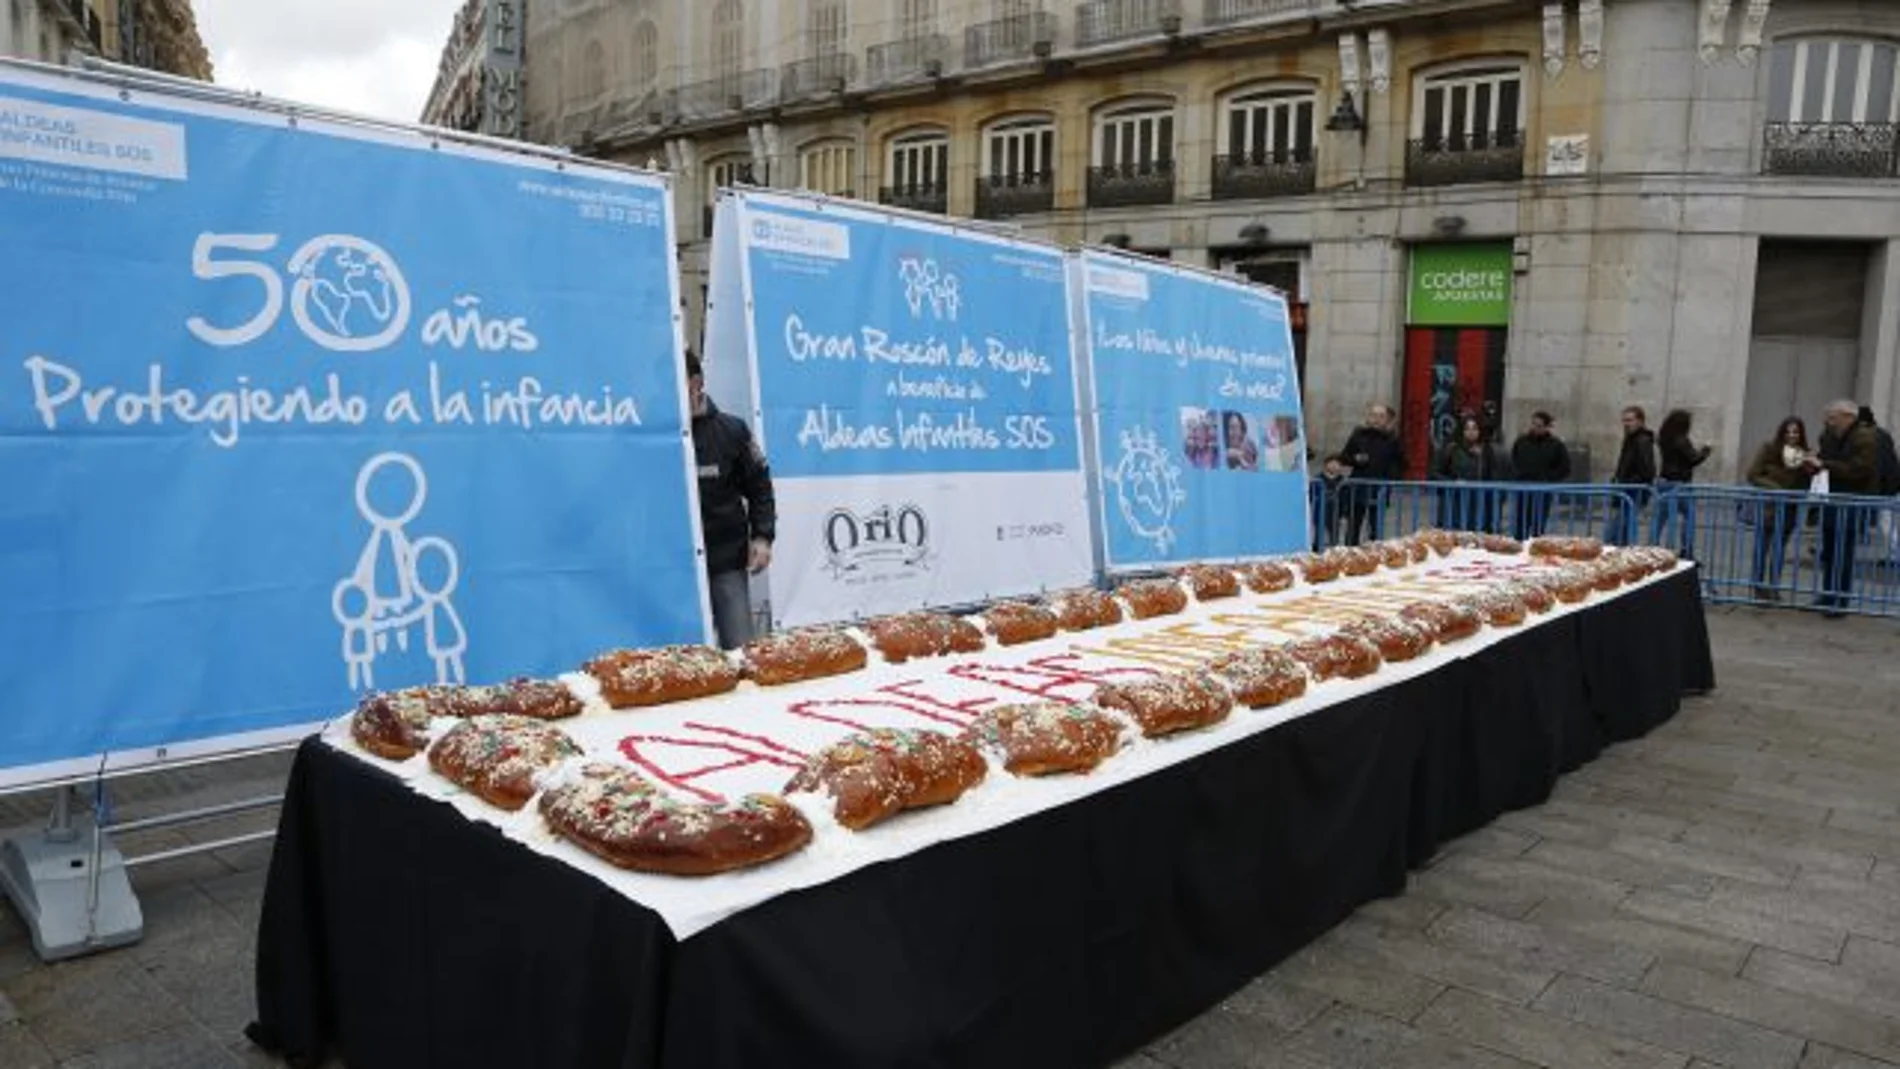 Aldeas Infantiles organiza un año más en la Puerta del Sol su tradicional roscón de Reyes